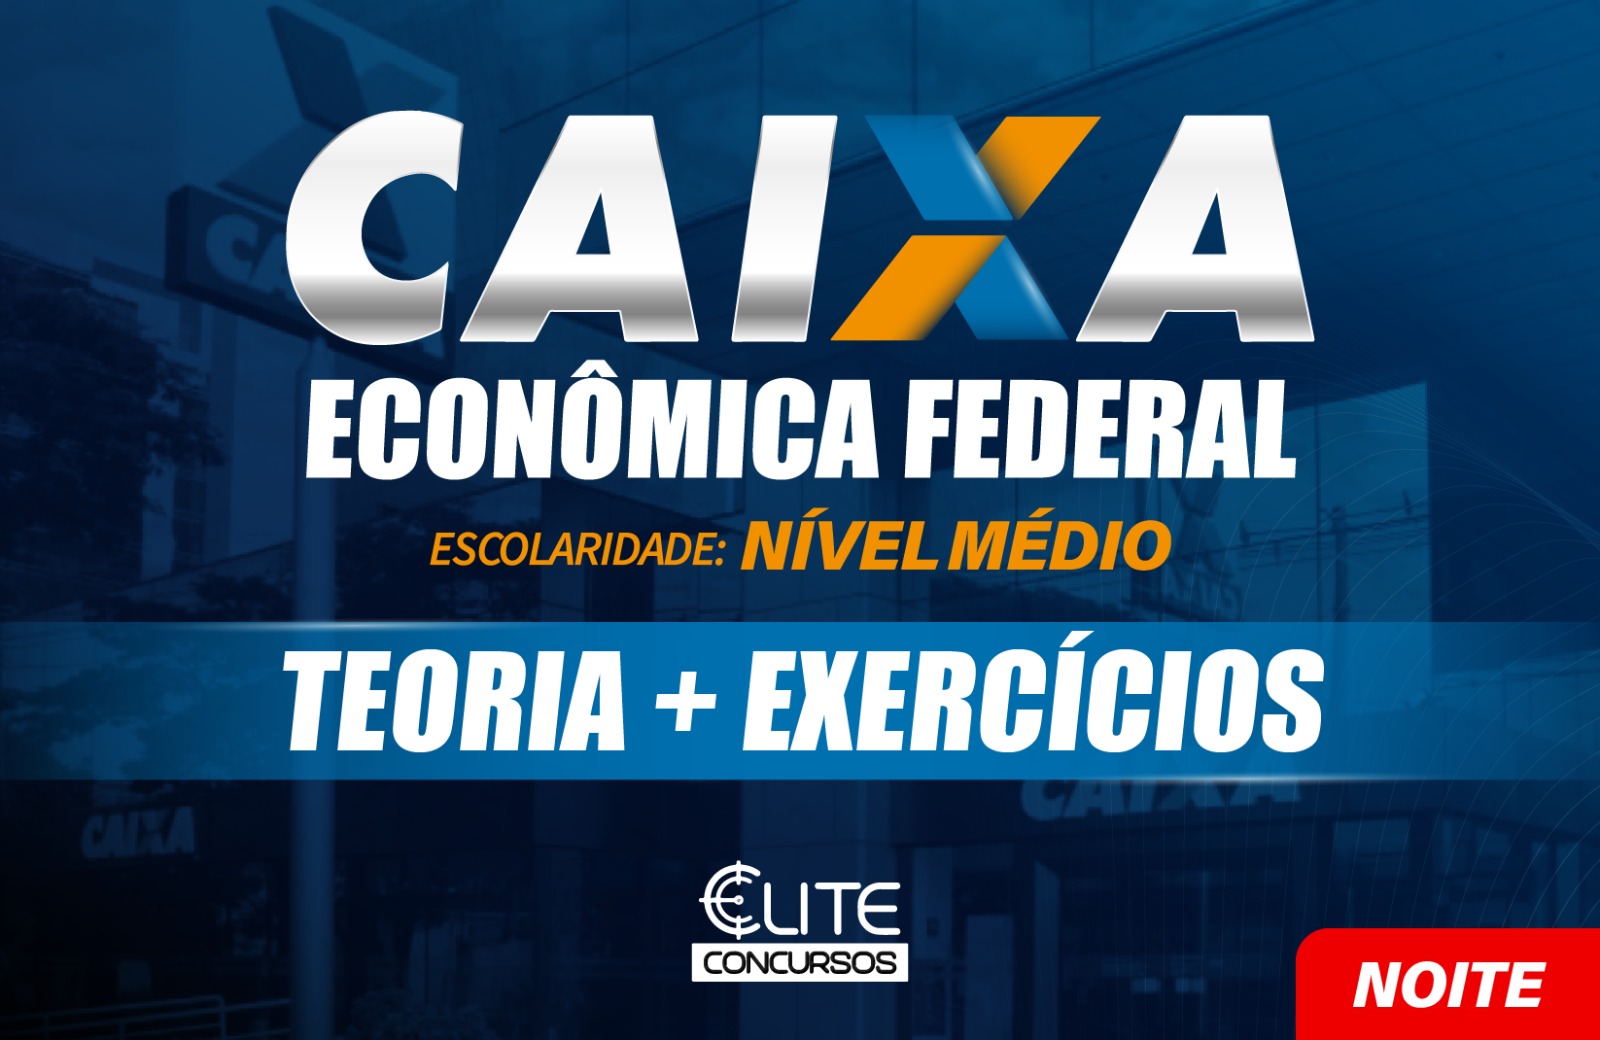 Caixa Econômica Federal - CAIXA - NOITE - 11/03